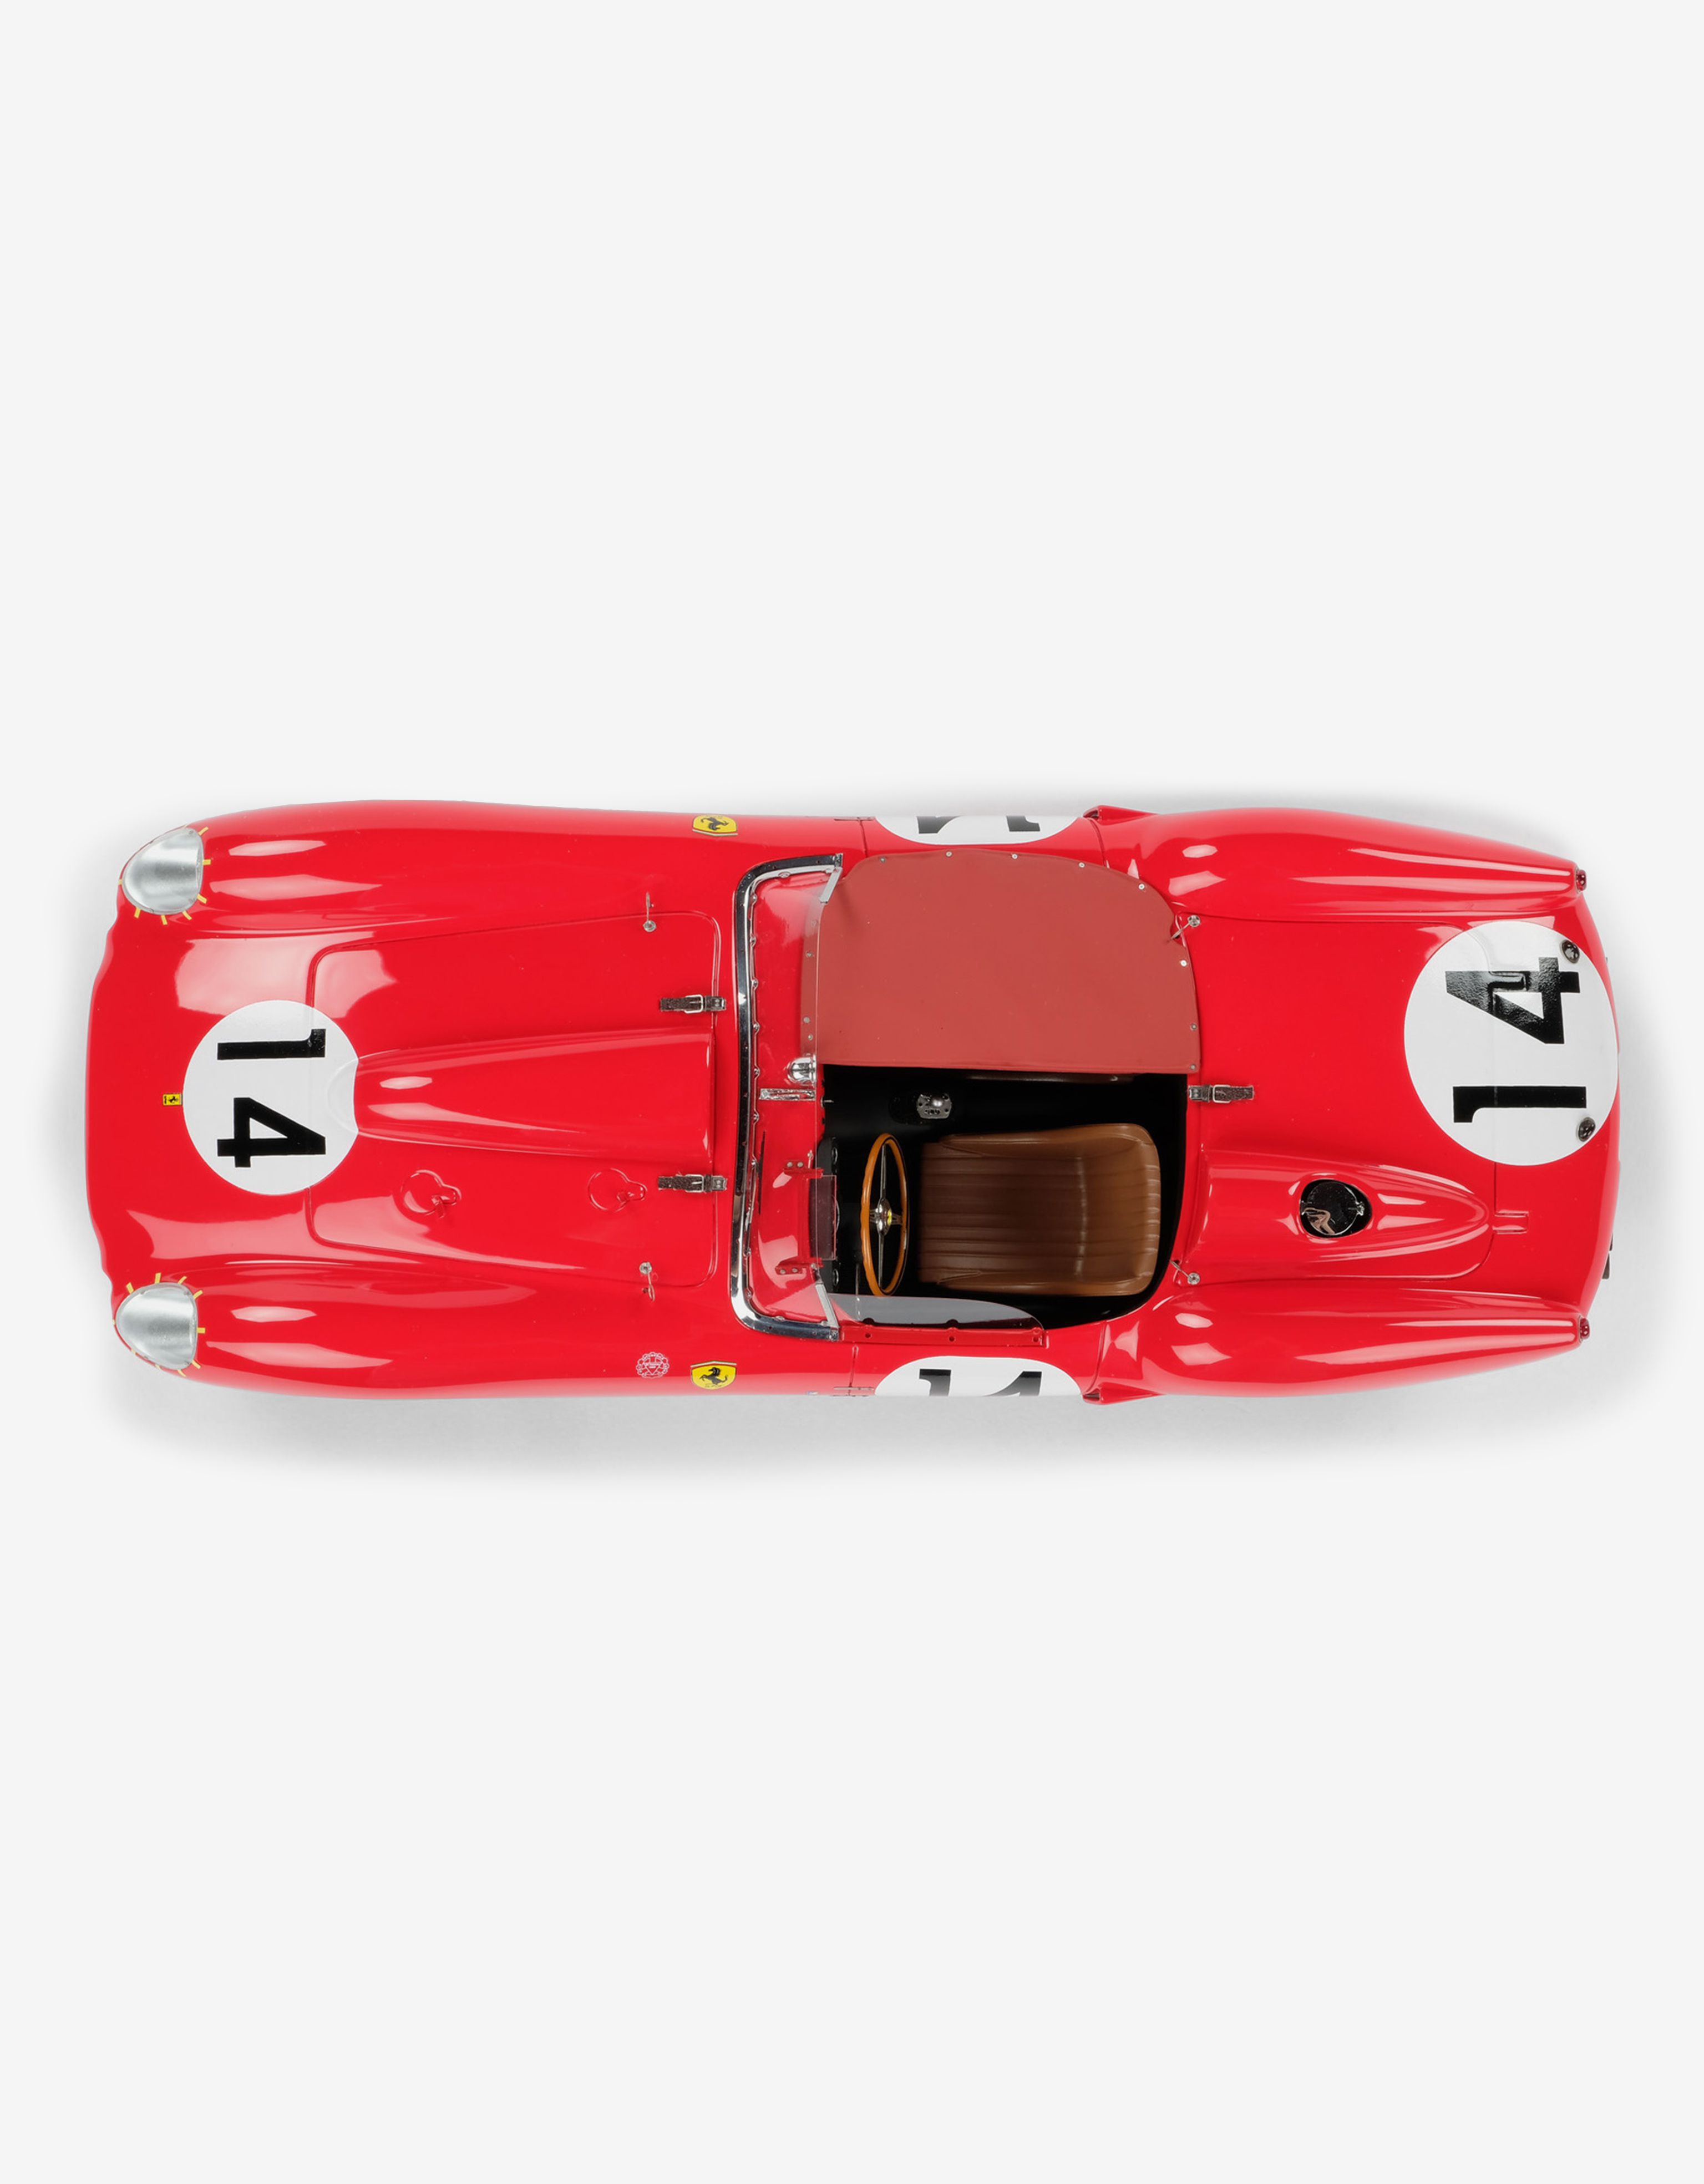 Ferrari Ferrari 250 TR 1958 Le Mans 1:18スケール モデルカー レッド L7580f